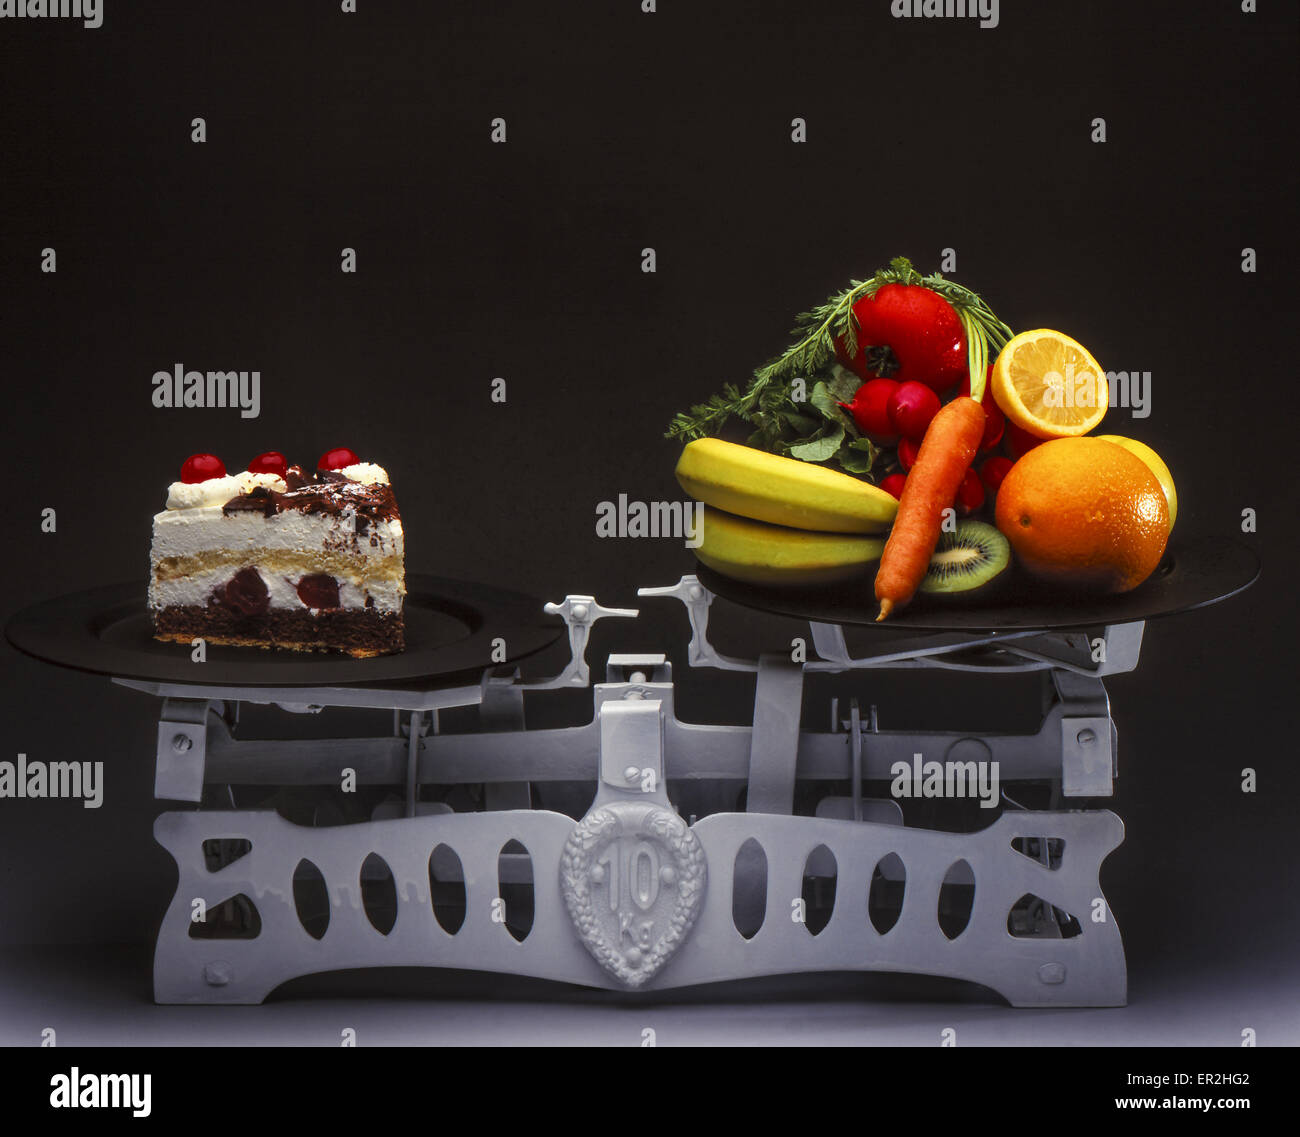 Waage mit Tortenstück und Obst, Symbolfoto Diät Stock Photo